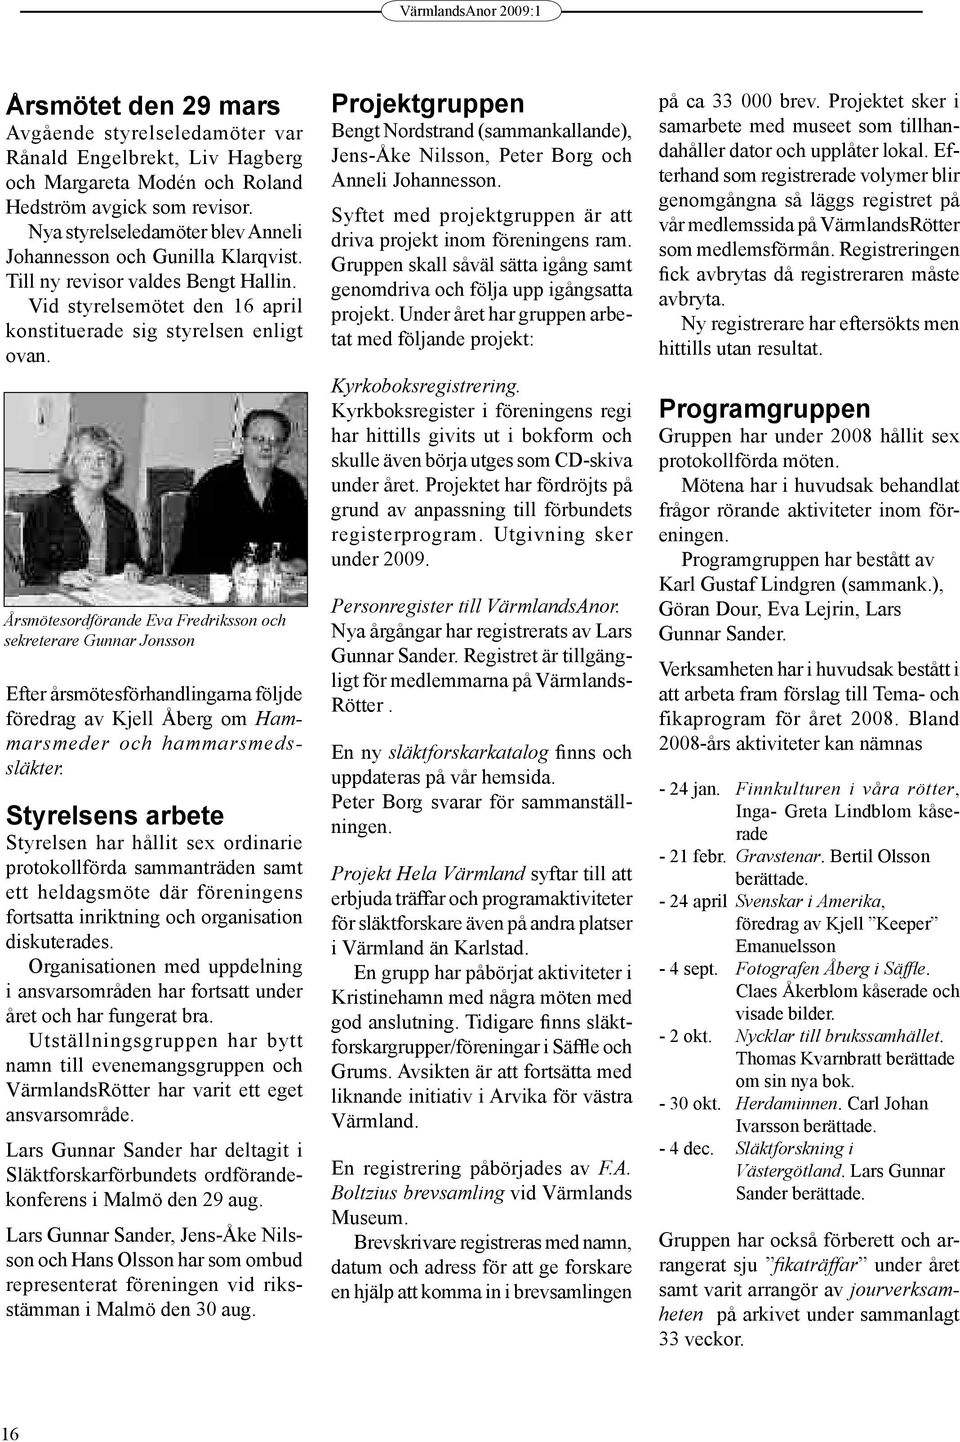 Årsmötesordförande Eva Fredriksson och sekreterare Gunnar Jonsson Efter årsmötesförhandlingarna följde föredrag av Kjell Åberg om Hammarsmeder och hammarsmedssläkter.